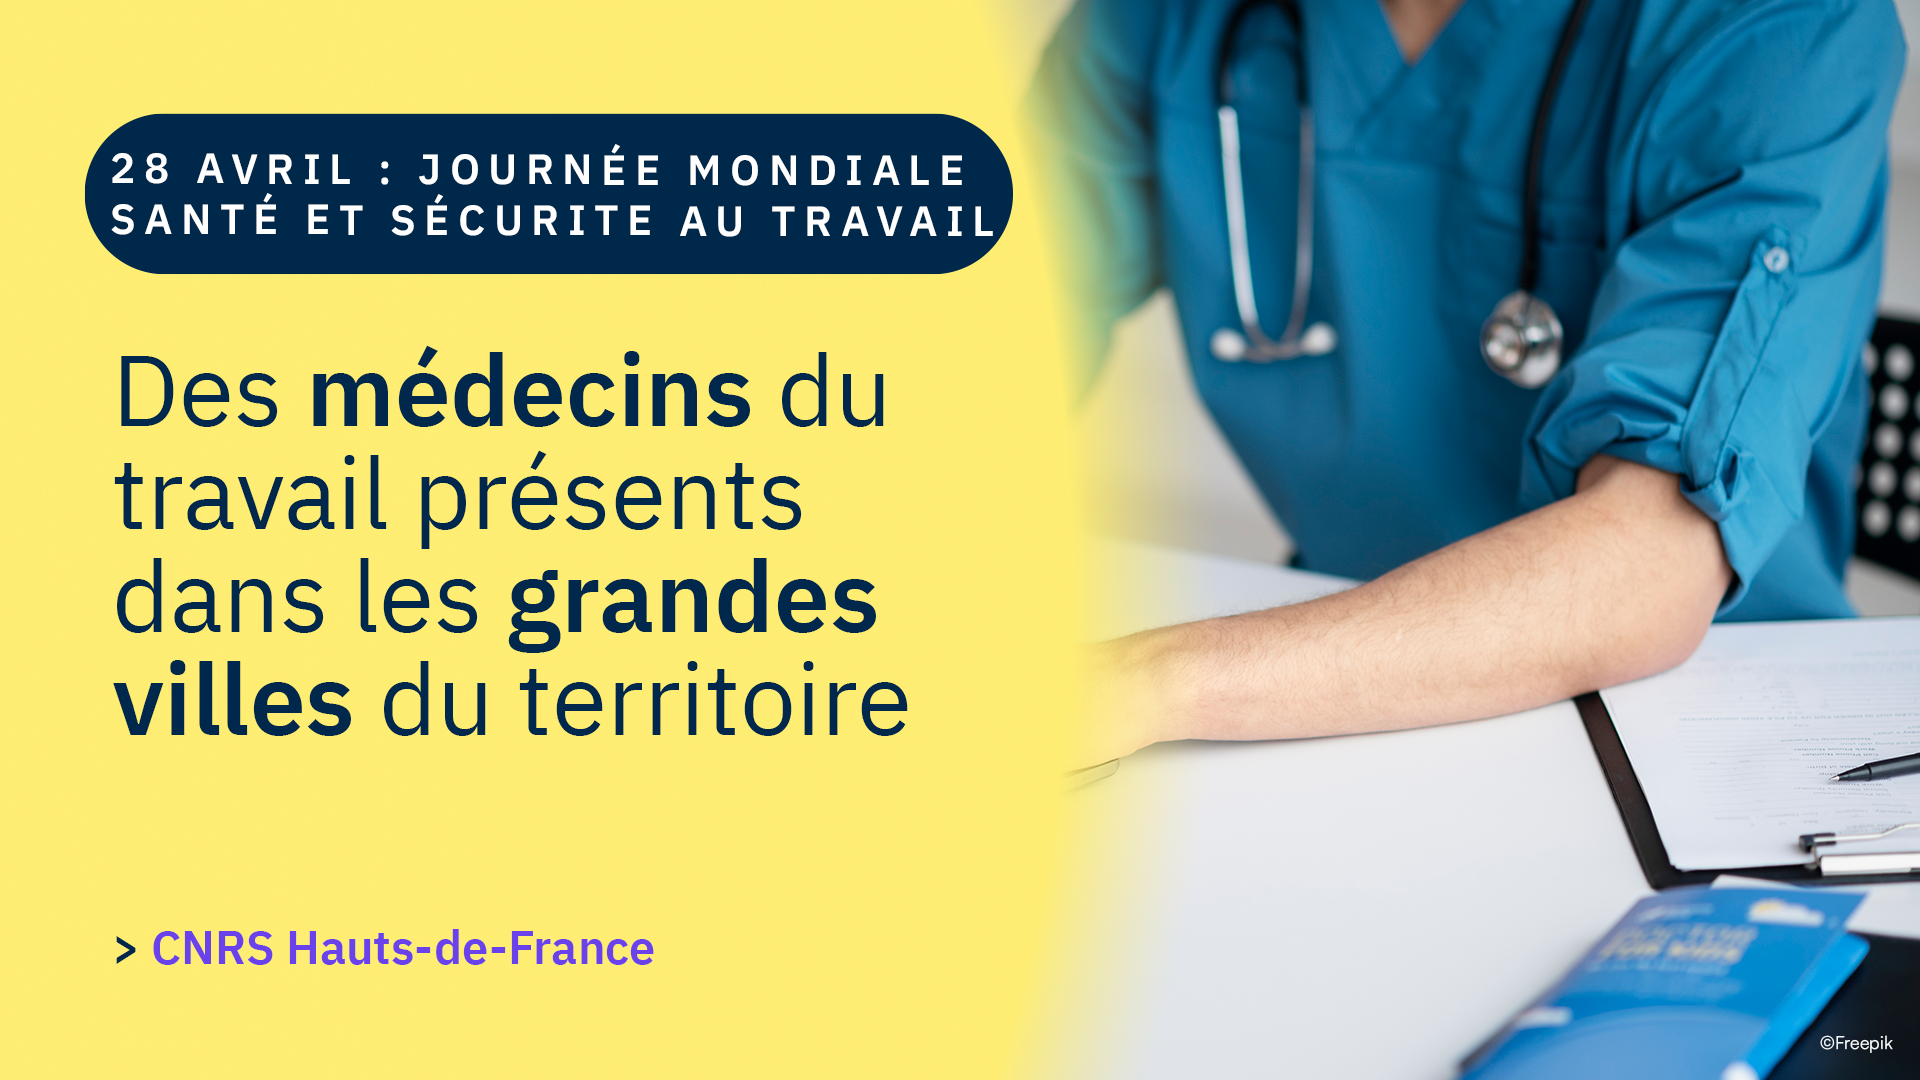 La surveillance médicale est assurée sur tout le territoire par les différents médecins du travail. 👩‍⚕️ 👨🏻‍⚕️